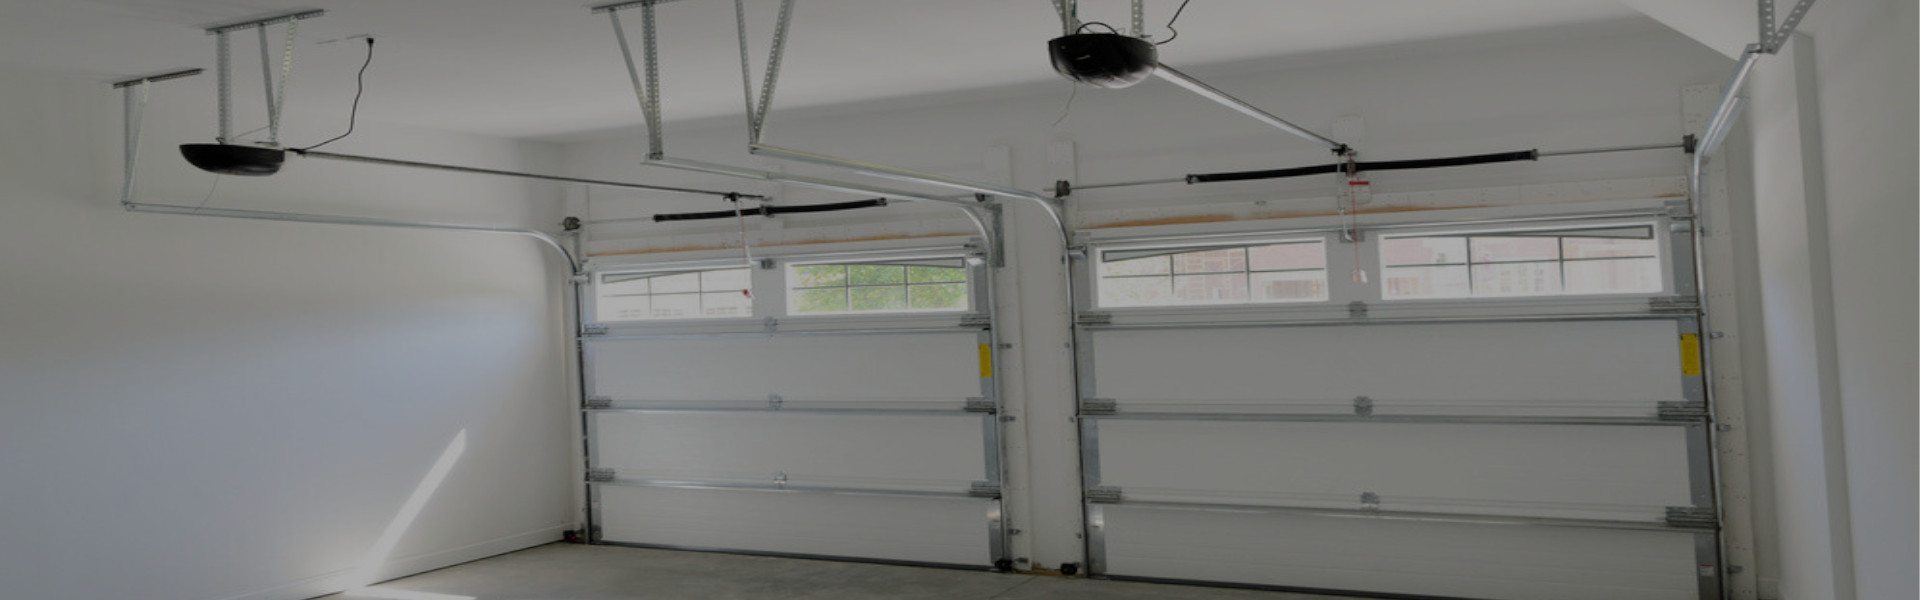 Slider Garage Door Repair, Glaziers in Balham, SW12